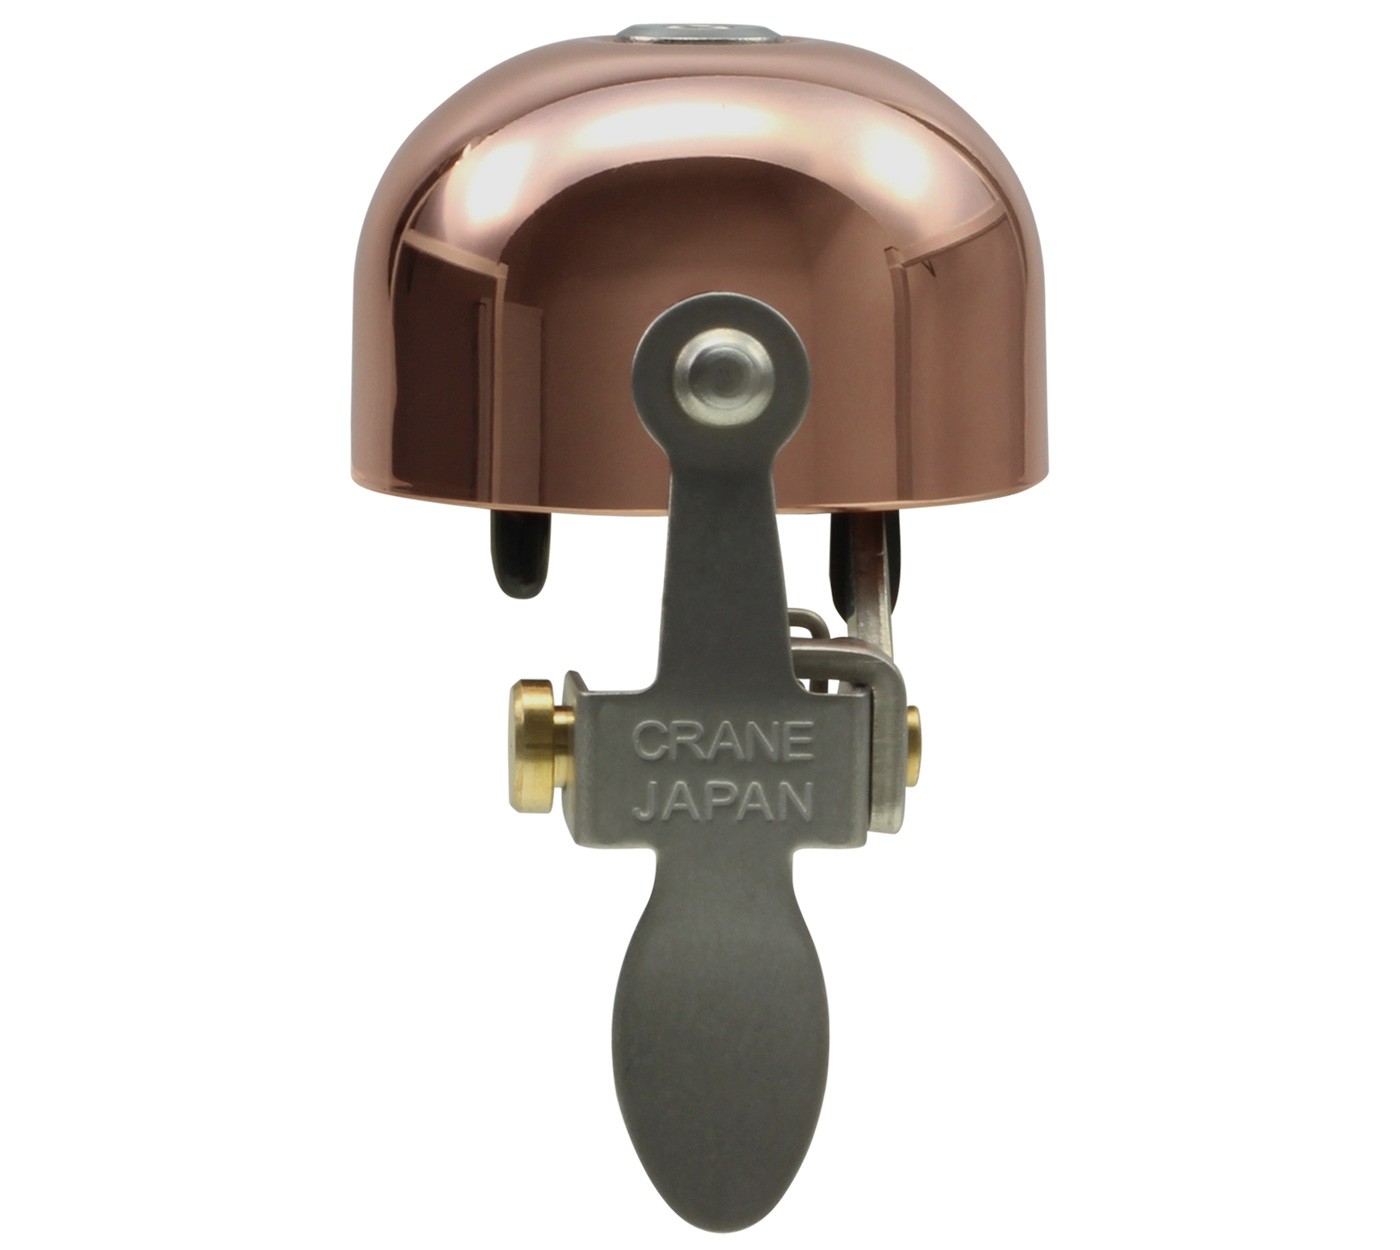 Crane Bell Co. E-NE ene Klingel Glocke Retro Design Horn Bell kupfer copper